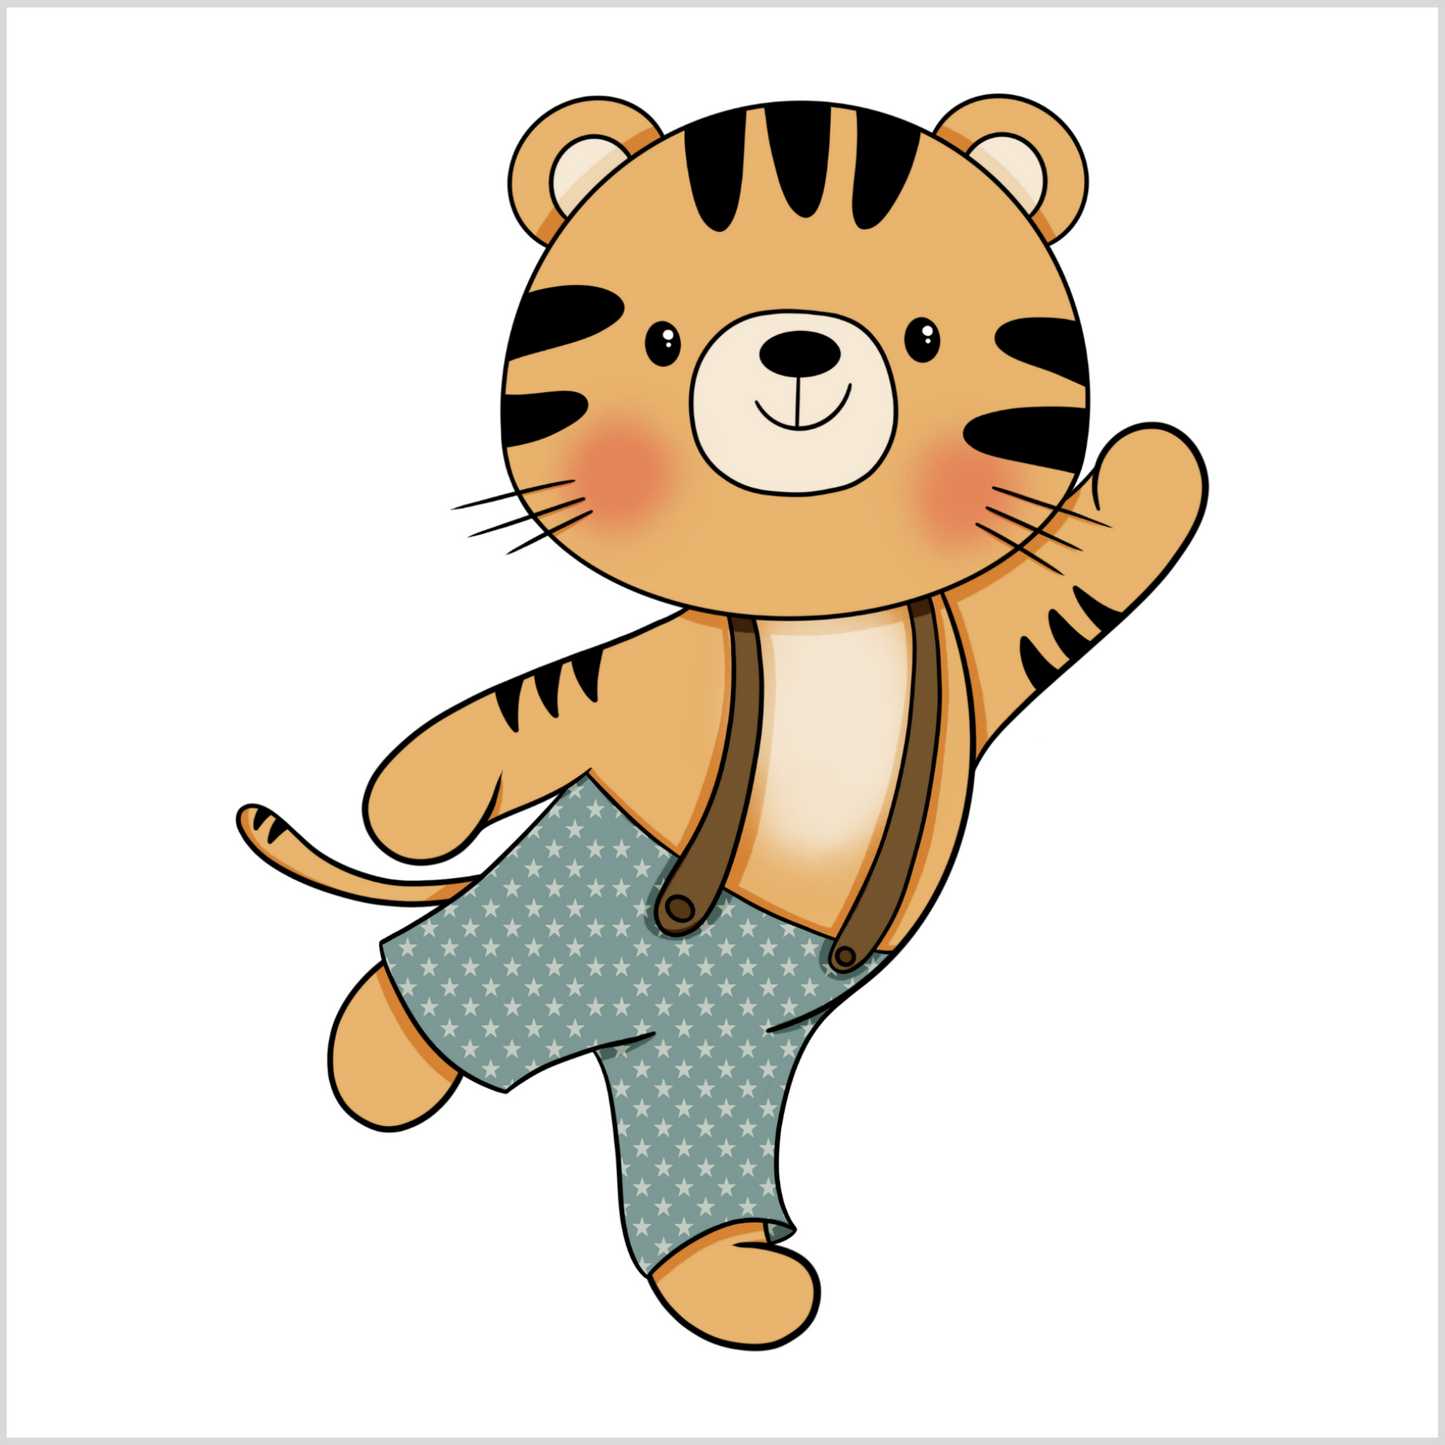 Grafisk illustrasjon av en tiger-gutt som vinker. Han har på grønn bukse med hvite stjerner og bukseseler. 